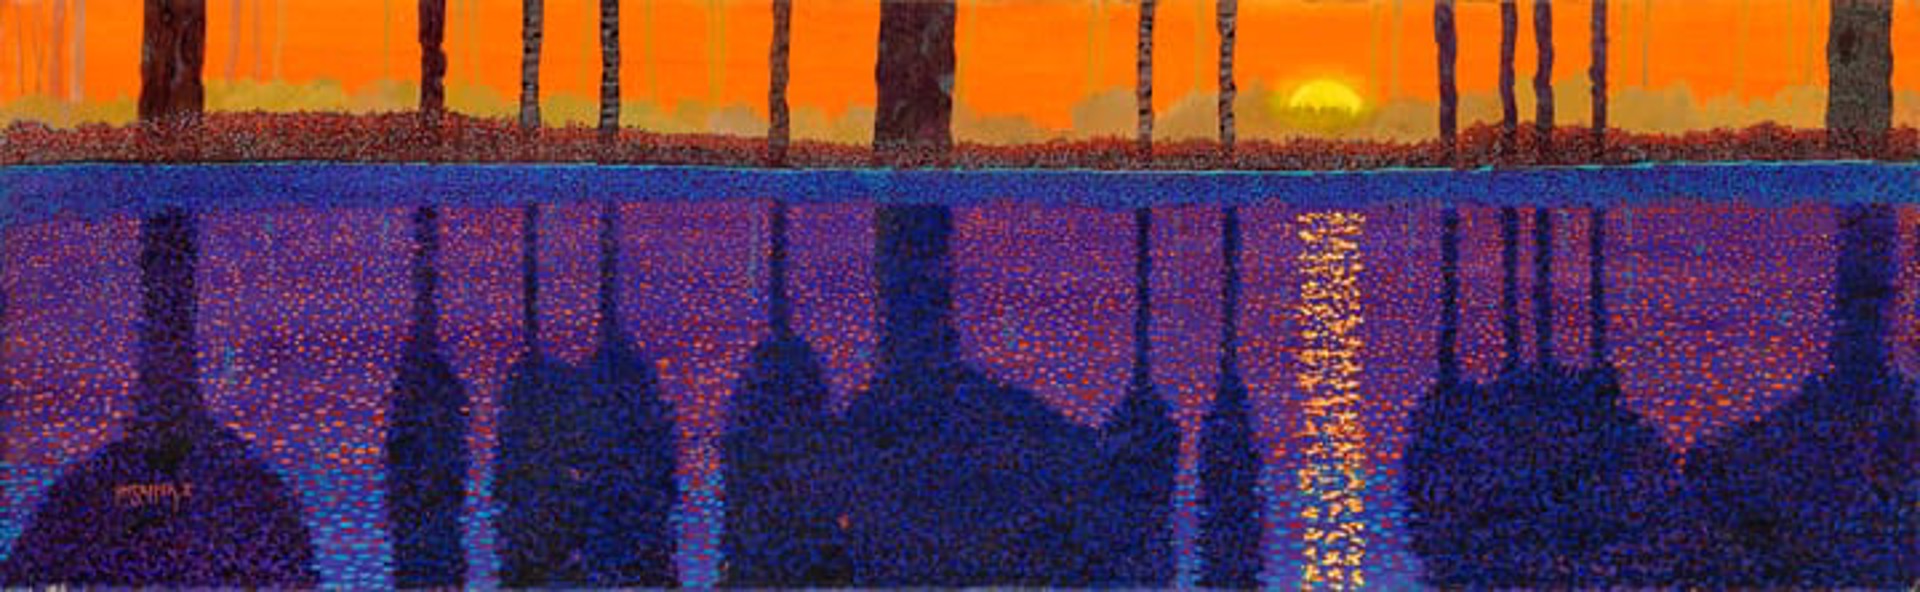 Molten Sunset by H.M. Saffer II